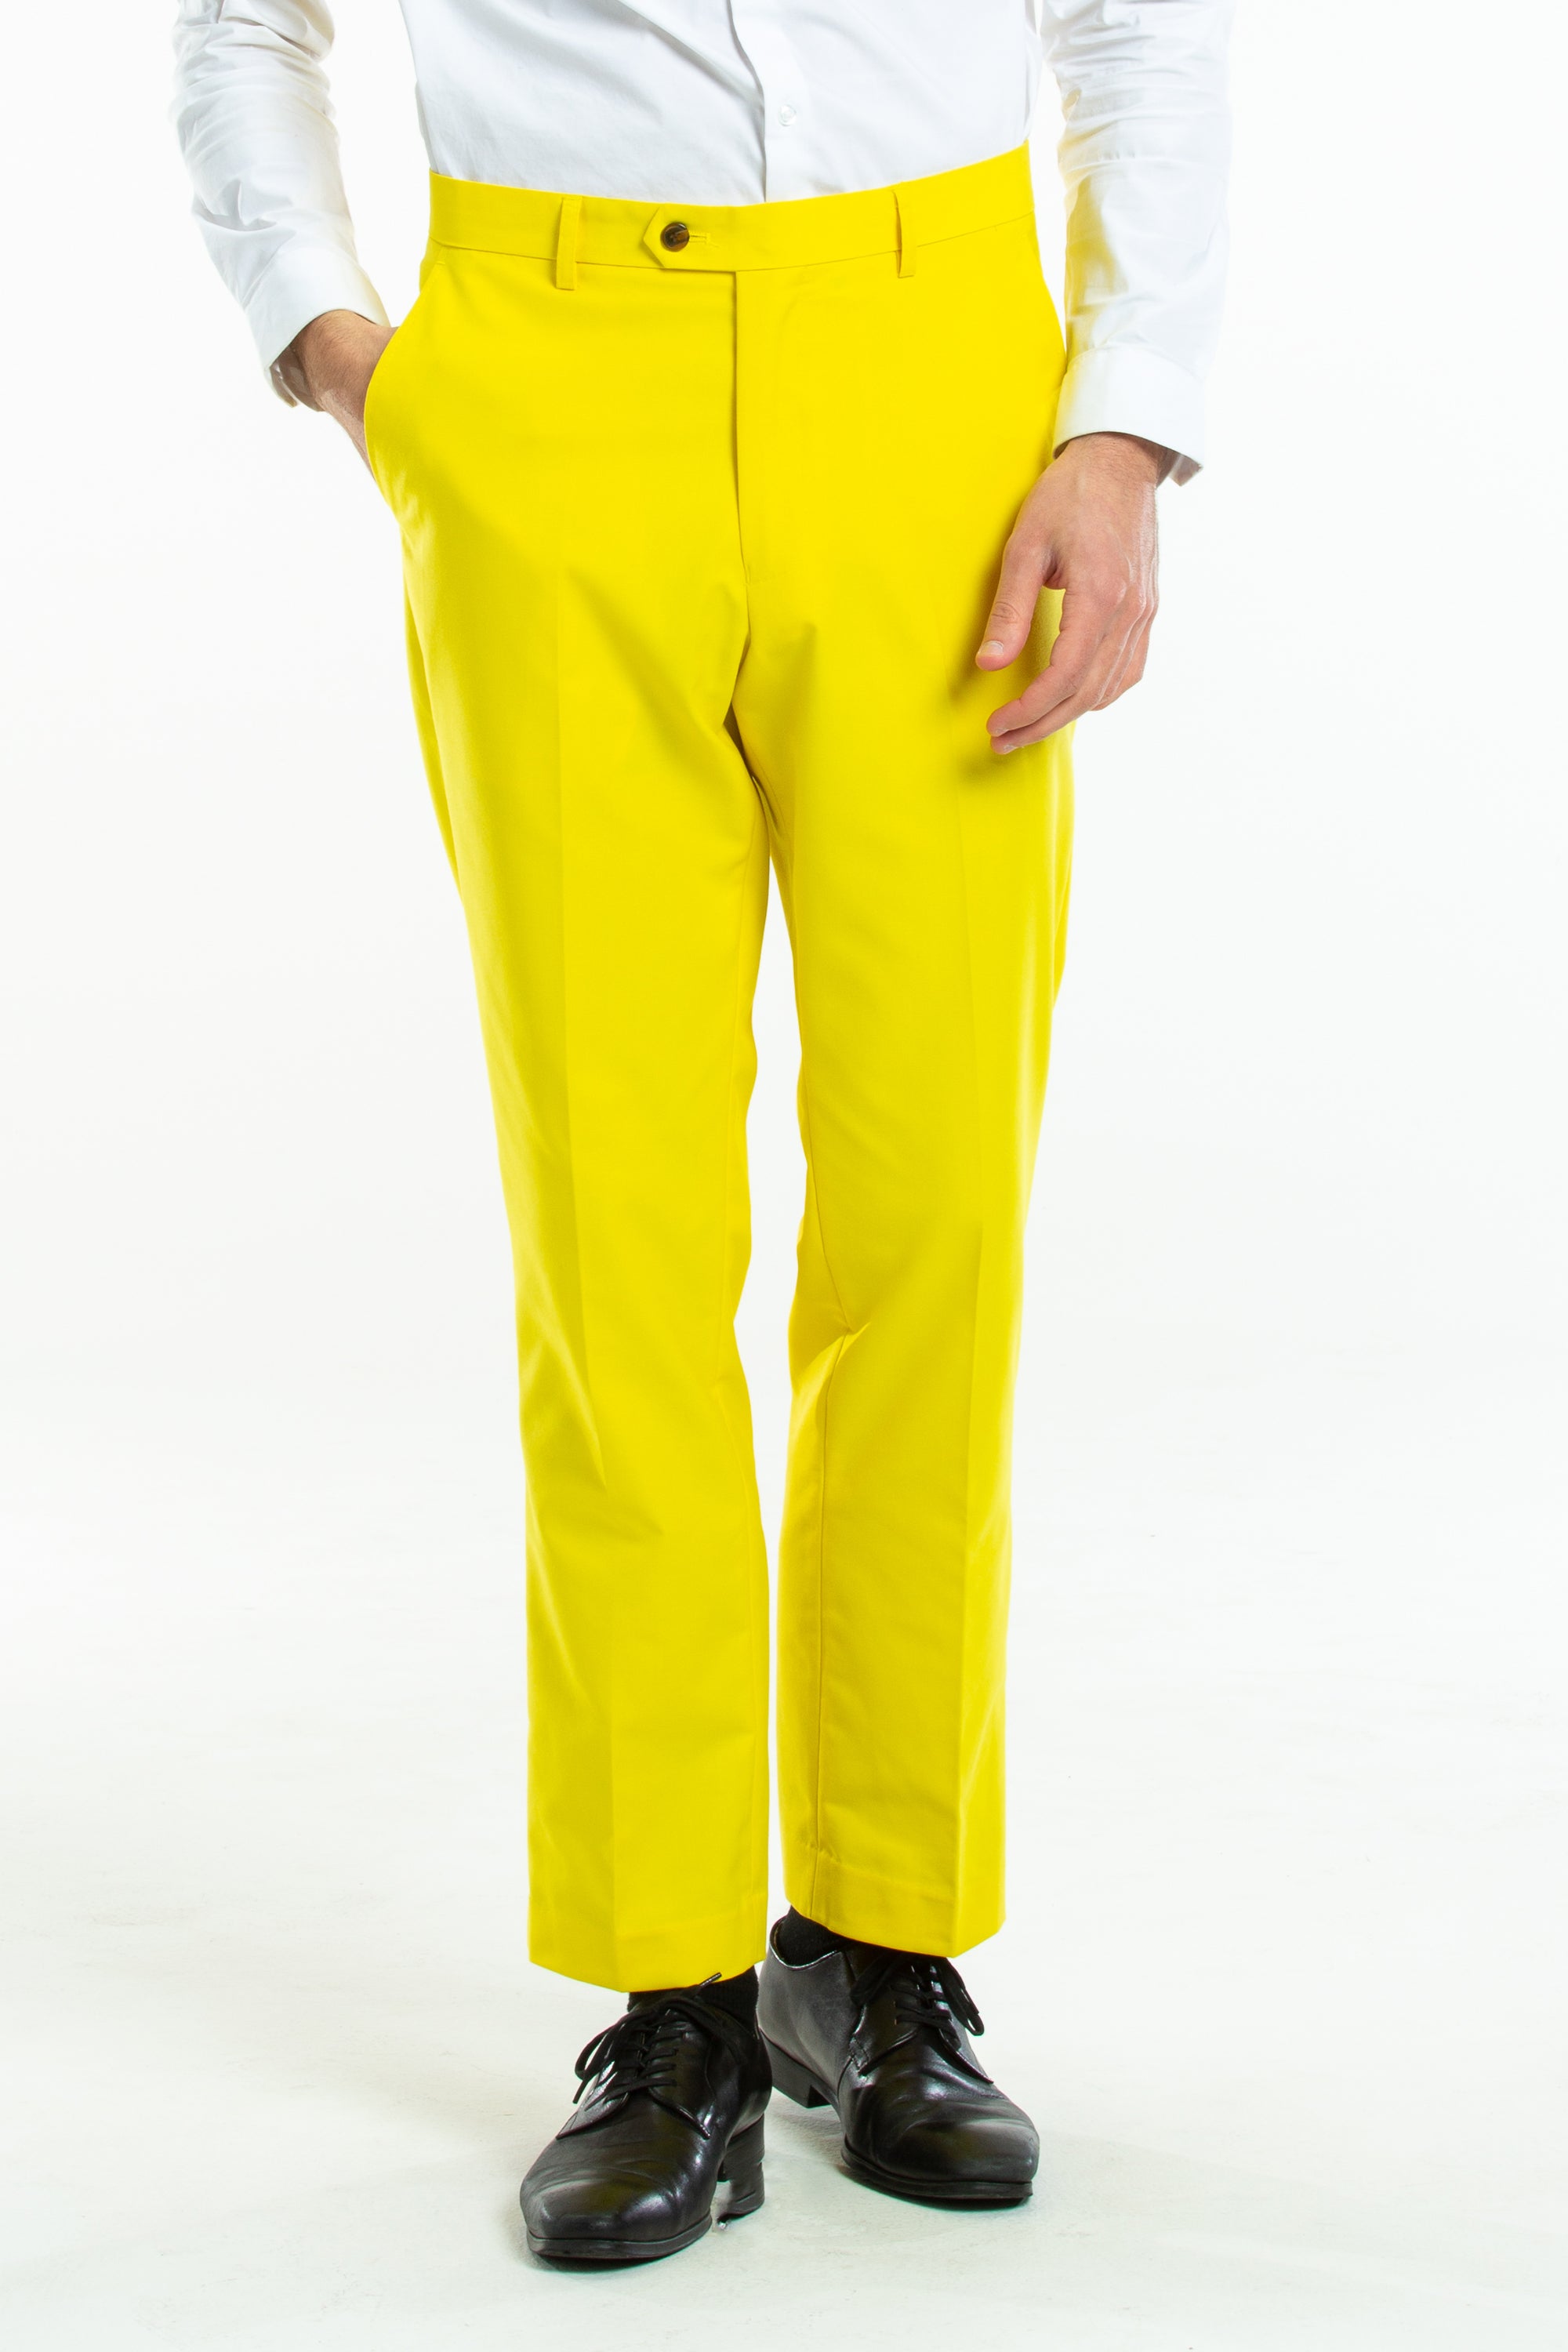 Yellow Pastel Men's Suit Pants